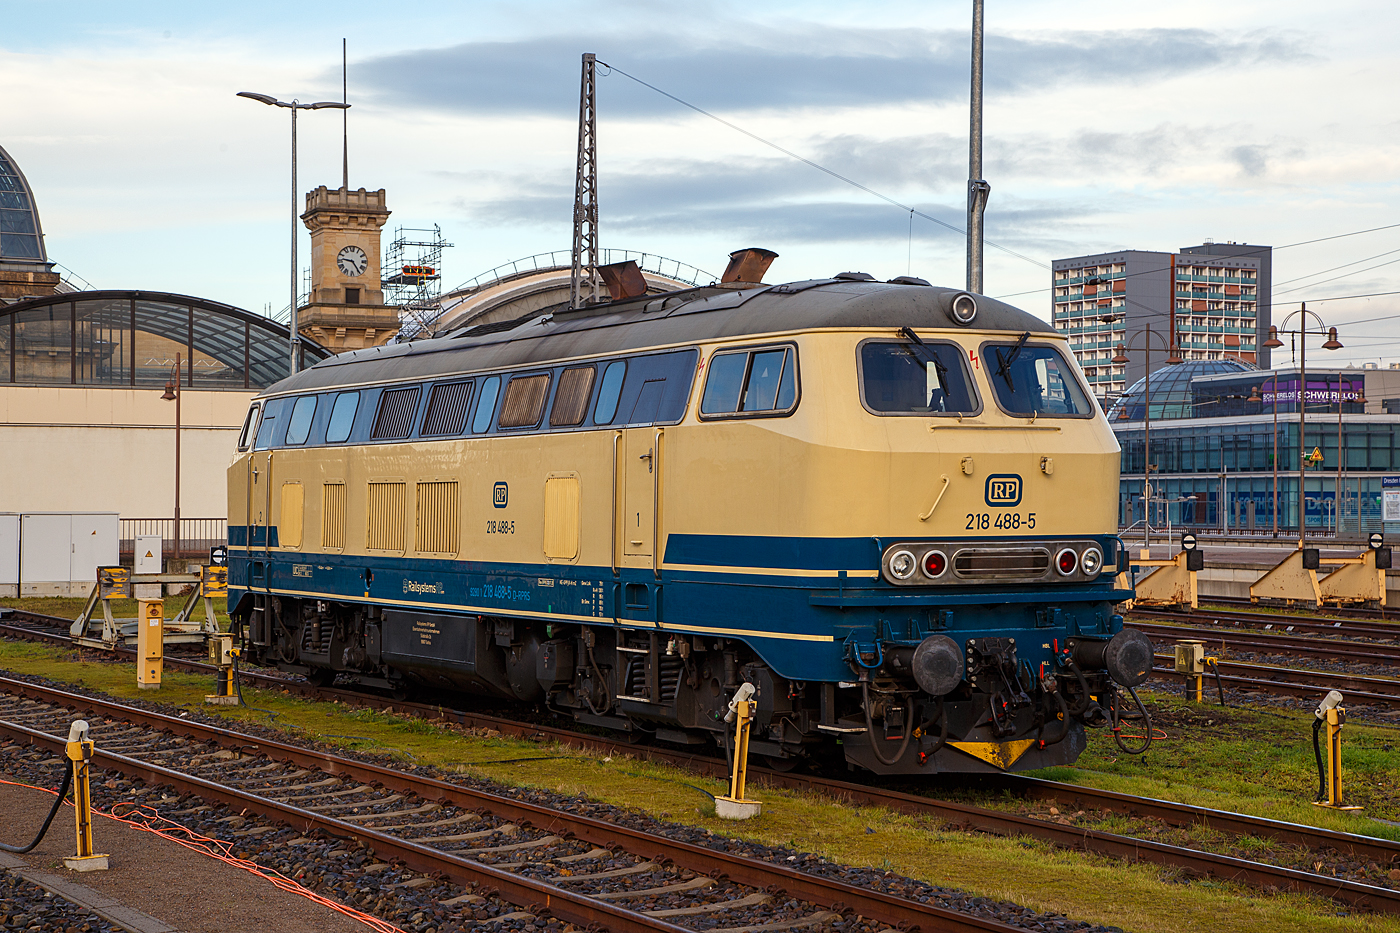 Die 218 488-5 (92 80 1218 488-5 D-RPRS) der Railsystems RP GmbH (Gotha) ist am 08.12.2022 auf einem der Abstellgleisen im Hauptbahnhof Dresden (Ost) angestellt.

Die V 164 wurde 1978 von der Krauss-Maffei AG in München-Allach unter der Fabriknummer 19803 gebaut und an die DB geliefert, bis 2018 war sie in verkehrsrot im Bestand der DB Regio Südost (Leipzig). Nun ist sie bei der Railsystems RP GmbH. Die Lok hat die Zulassungen für D, A, B, CH, F, DK und CS (Serbien und Montenegro).

Die Railsystems RP GmbH halt als Einsatzbestand 11 Fahrzeuge dieser Baureihe. Die 218 488 hat eine 36-polige Doppeltraktions- und Wendezugsteuerung, sowie eine Zugsammelschiene (AEG). 

TECHNISCHE DATEN:
Spurweite: 1.435 mm (Normalspur)
Achsformel:  B'B'
Spurweite:  1.435 mm
Länge: 16.400 mm
Drehzapfenabstand:  8.600 mm
Achsabstand im Drehgestell: 2.800 mm
Gewicht:  79 Tonnen
Achslast: 20 t
Höchstgeschwindigkeit:  140 km/h
Motor: Wassergekühlter V 12 Zylinder Viertakt MTU - Dieselmotor vom Typ 12 V 952 TB 10 mit Direkteinspritzung und Abgasturboaufladung mit Ladeluftkühlung
Motorleistung: 1.839 kW (2.500 PS) bei 1.500 U/min
Anfahrzugkraft: 235kN / Dauerzugkraft: 175kN
Getriebe: MTU-Getriebe K 252 SUBB (mit 2 hydraulische Drehmomentwandler)
Leistungsübertragung: hydraulisch
Tankinhalt:  3.150 l
Bremse: KE-GPP-R-H mZ
Besonderheiten: doppeltraktionsfähig / wendezugfähig, elektrische Zugsammelschiene
